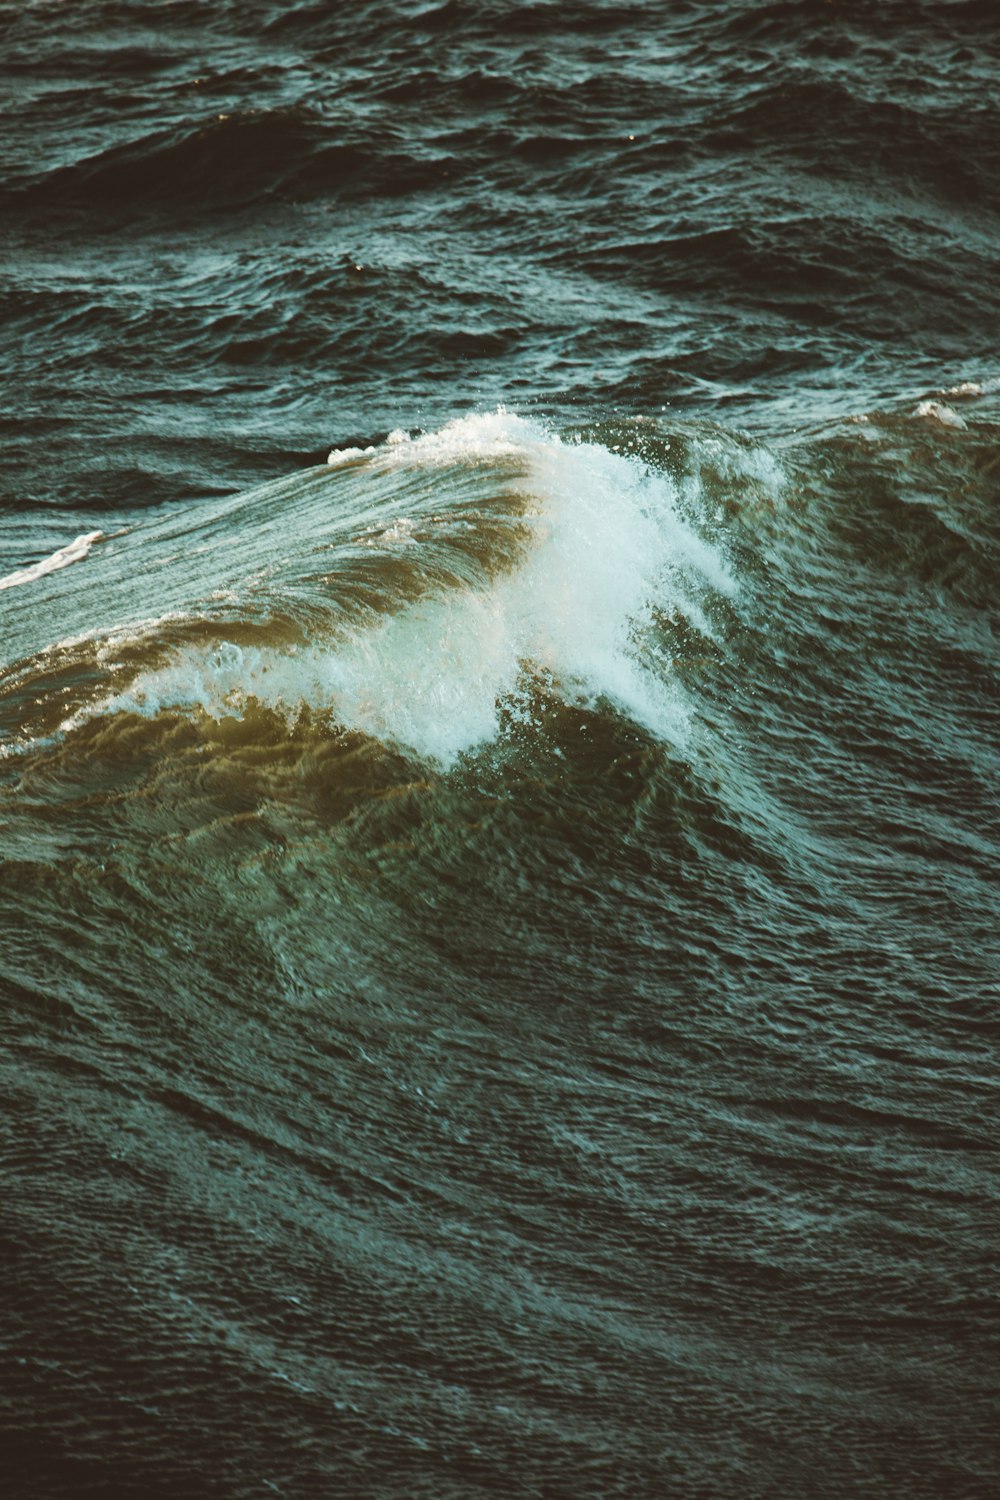 Wave of sea photo – Free Sea Image on Unsplash